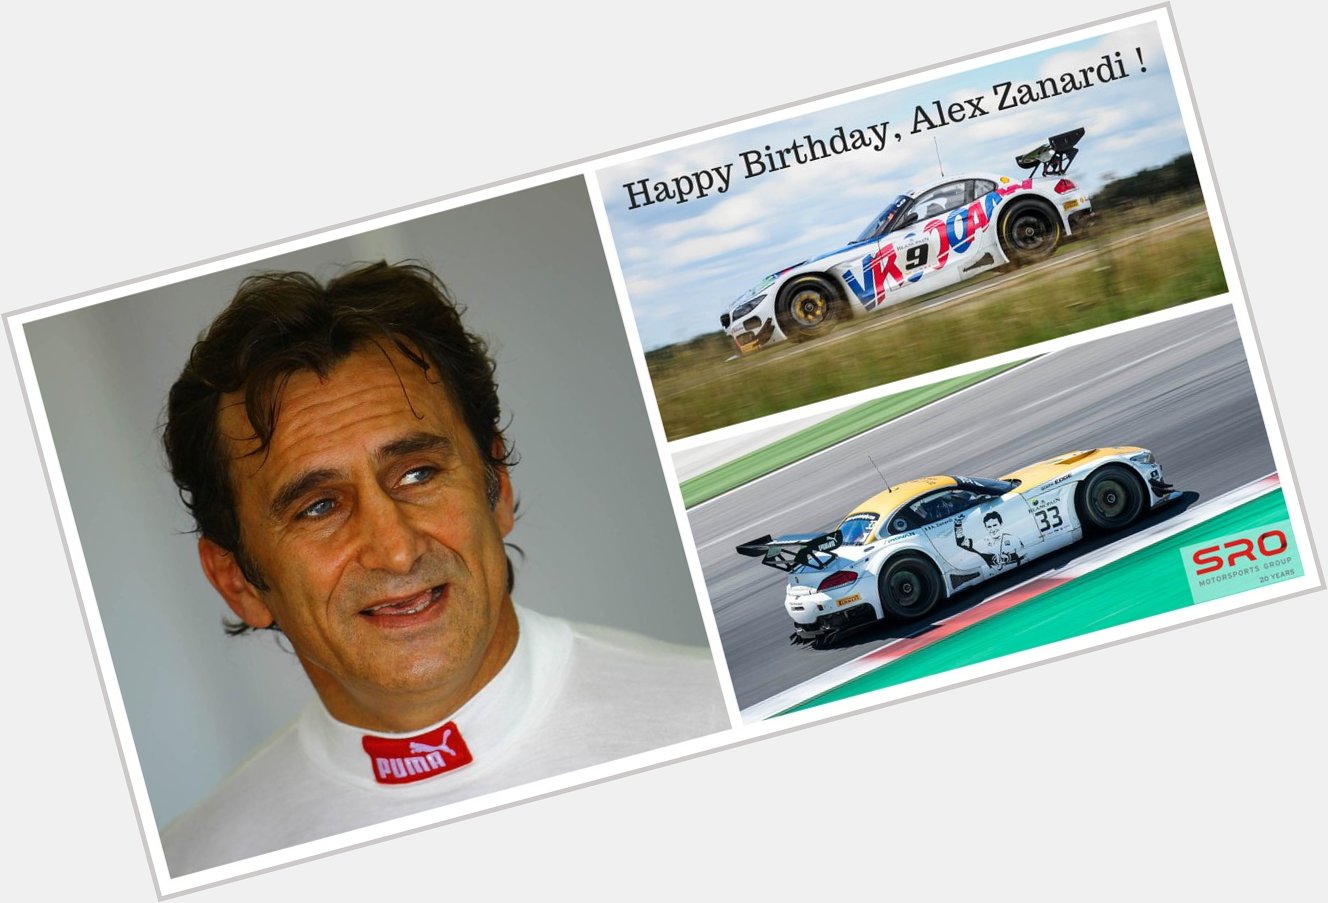 To a main who is admired by all: happy birthday, Alex Zanardi!  